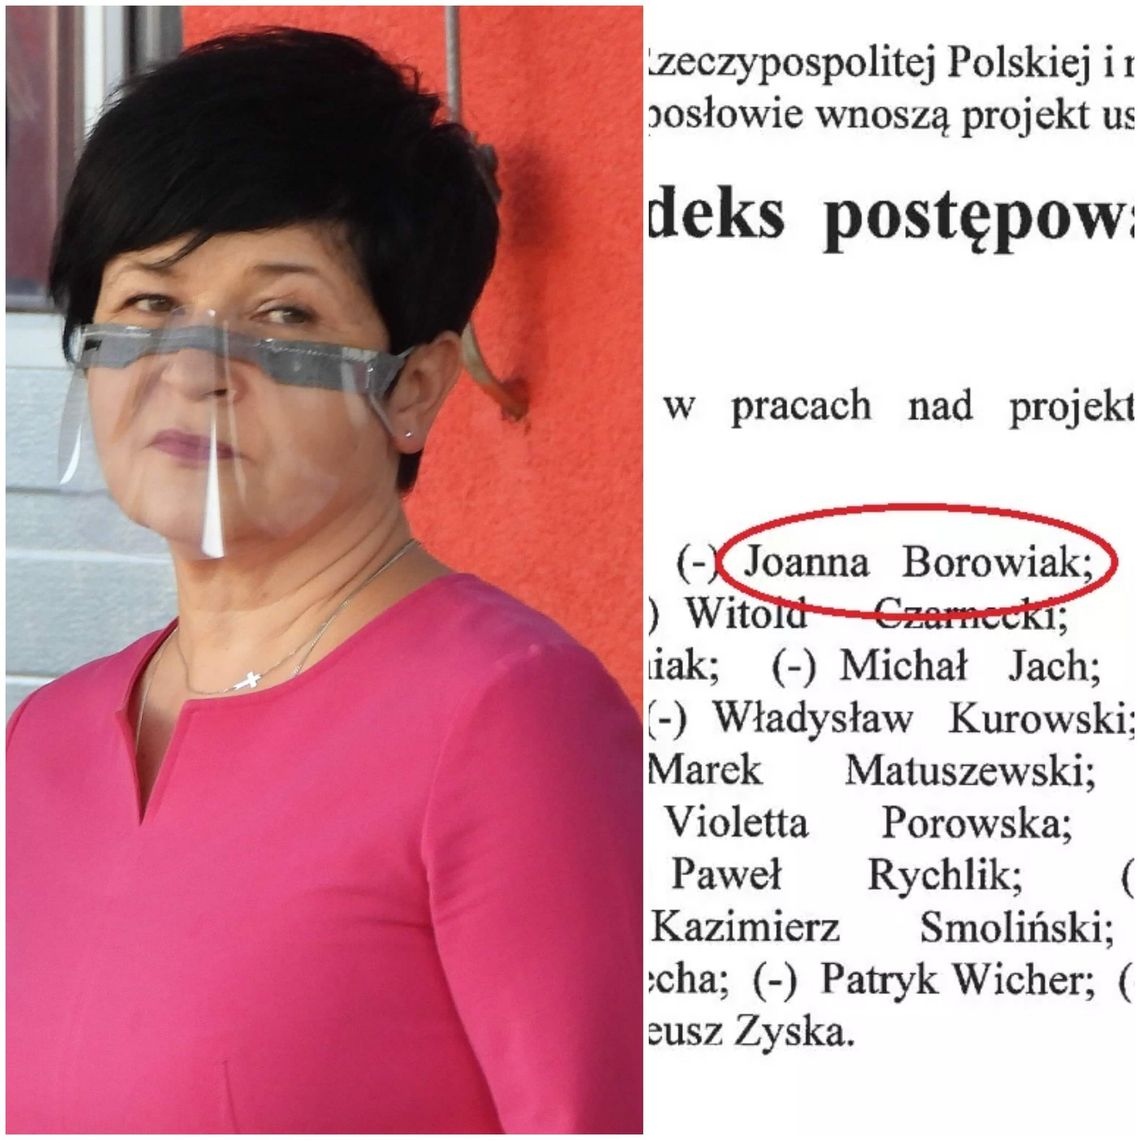 Nazwisko posłanki z Włocławka na kolejnej "Liście hańby". Jest w grupie posłów, która wyszła z inicjatywą zmiany ustawy ws. mandatów